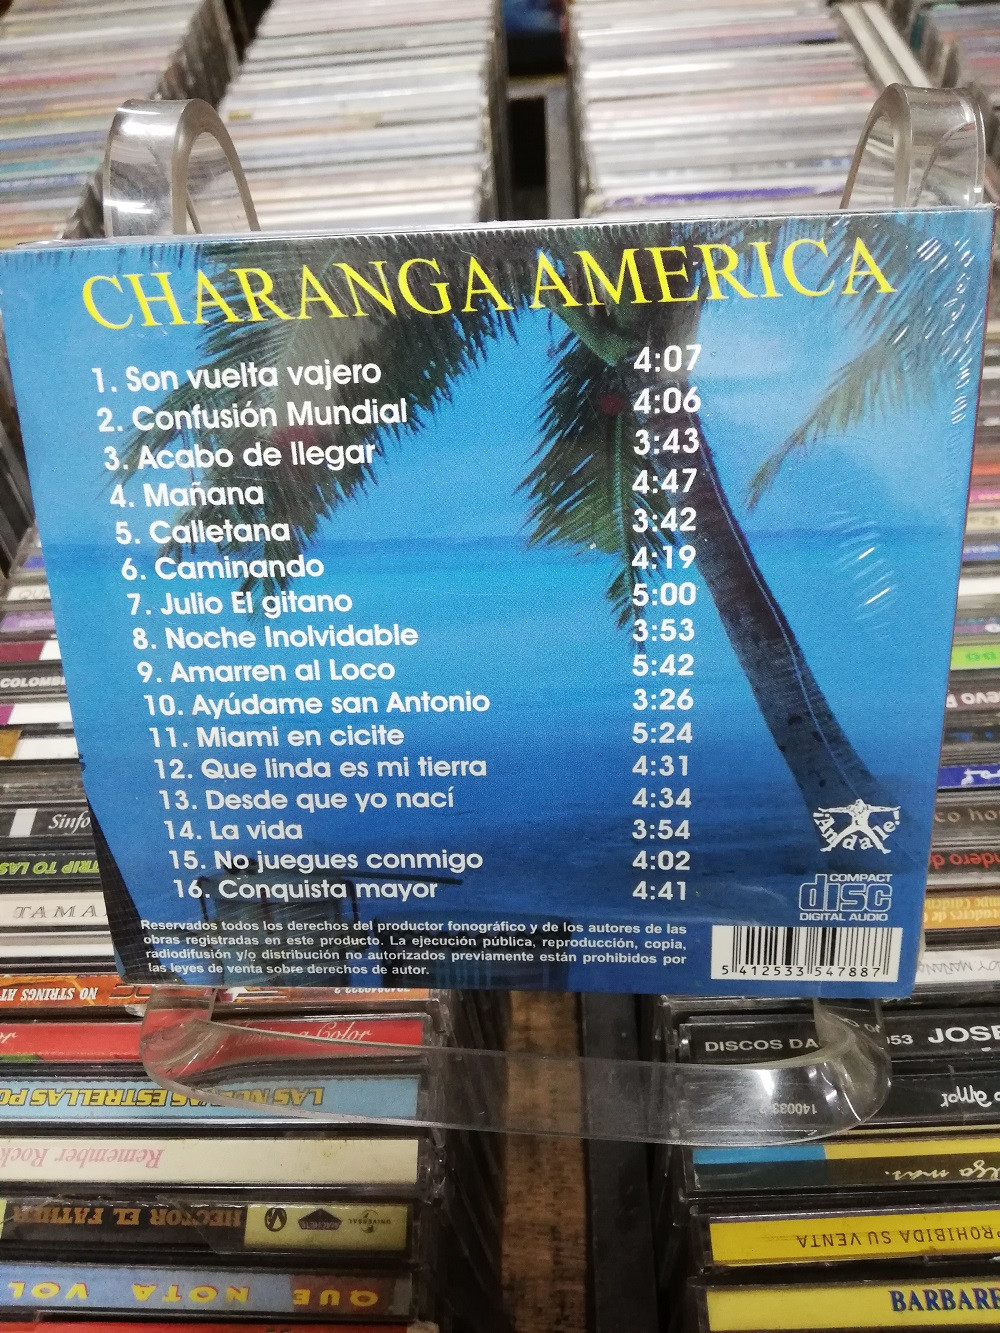 Imagen CD CHARANGA AMÉRICA - EXITOS 2